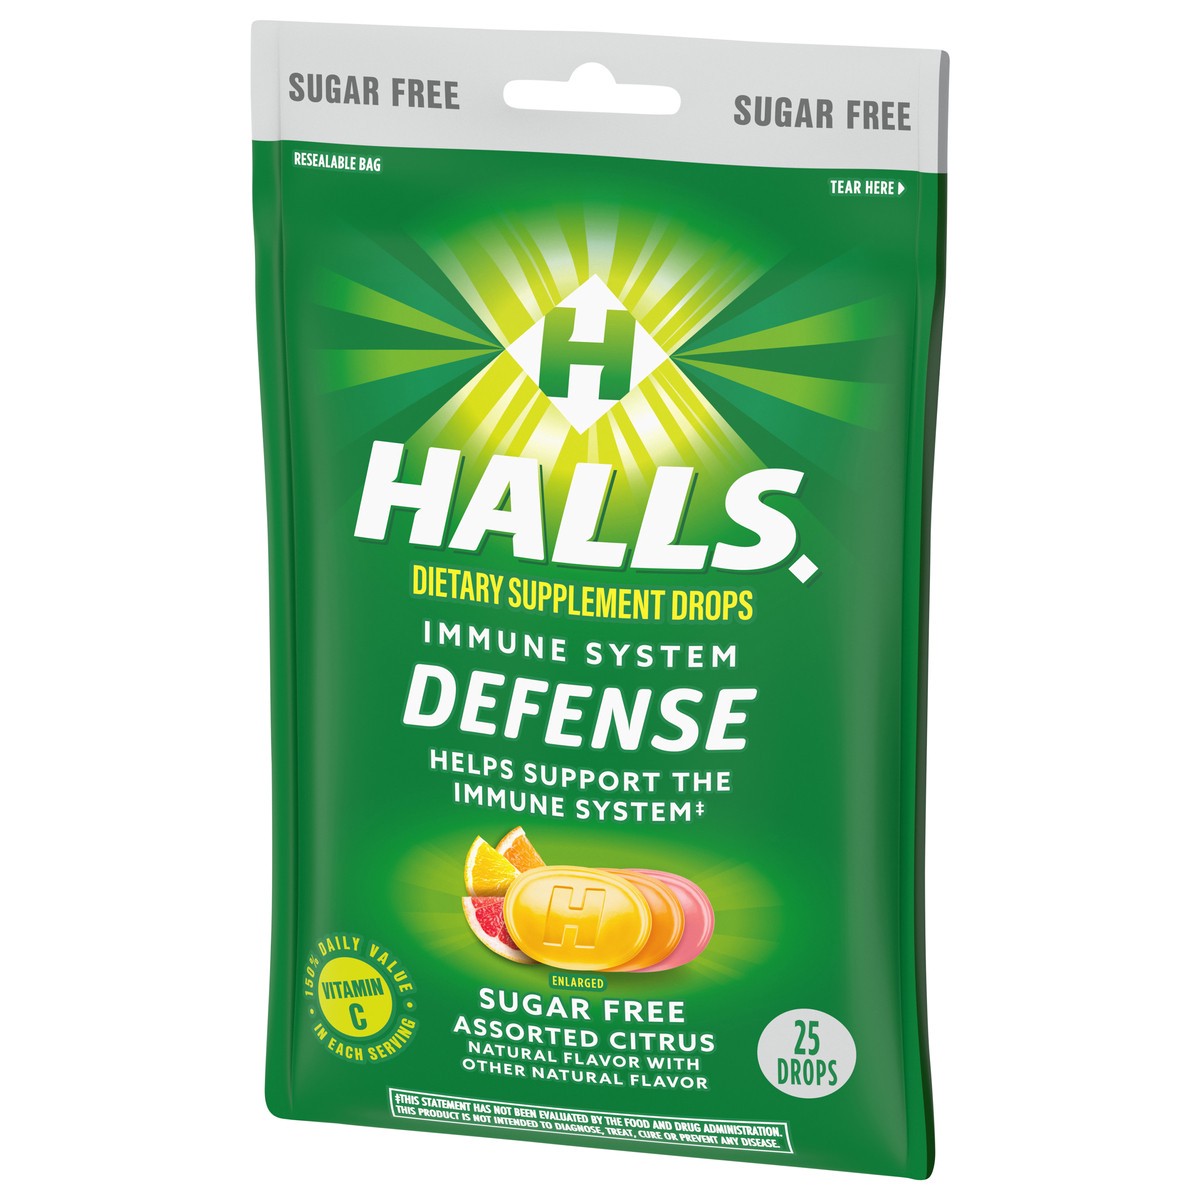 slide 3 of 9, HALLS Defense Assorted Citrus Sugar Free Vitamin C Drops, 25 Drops, 2.73 oz